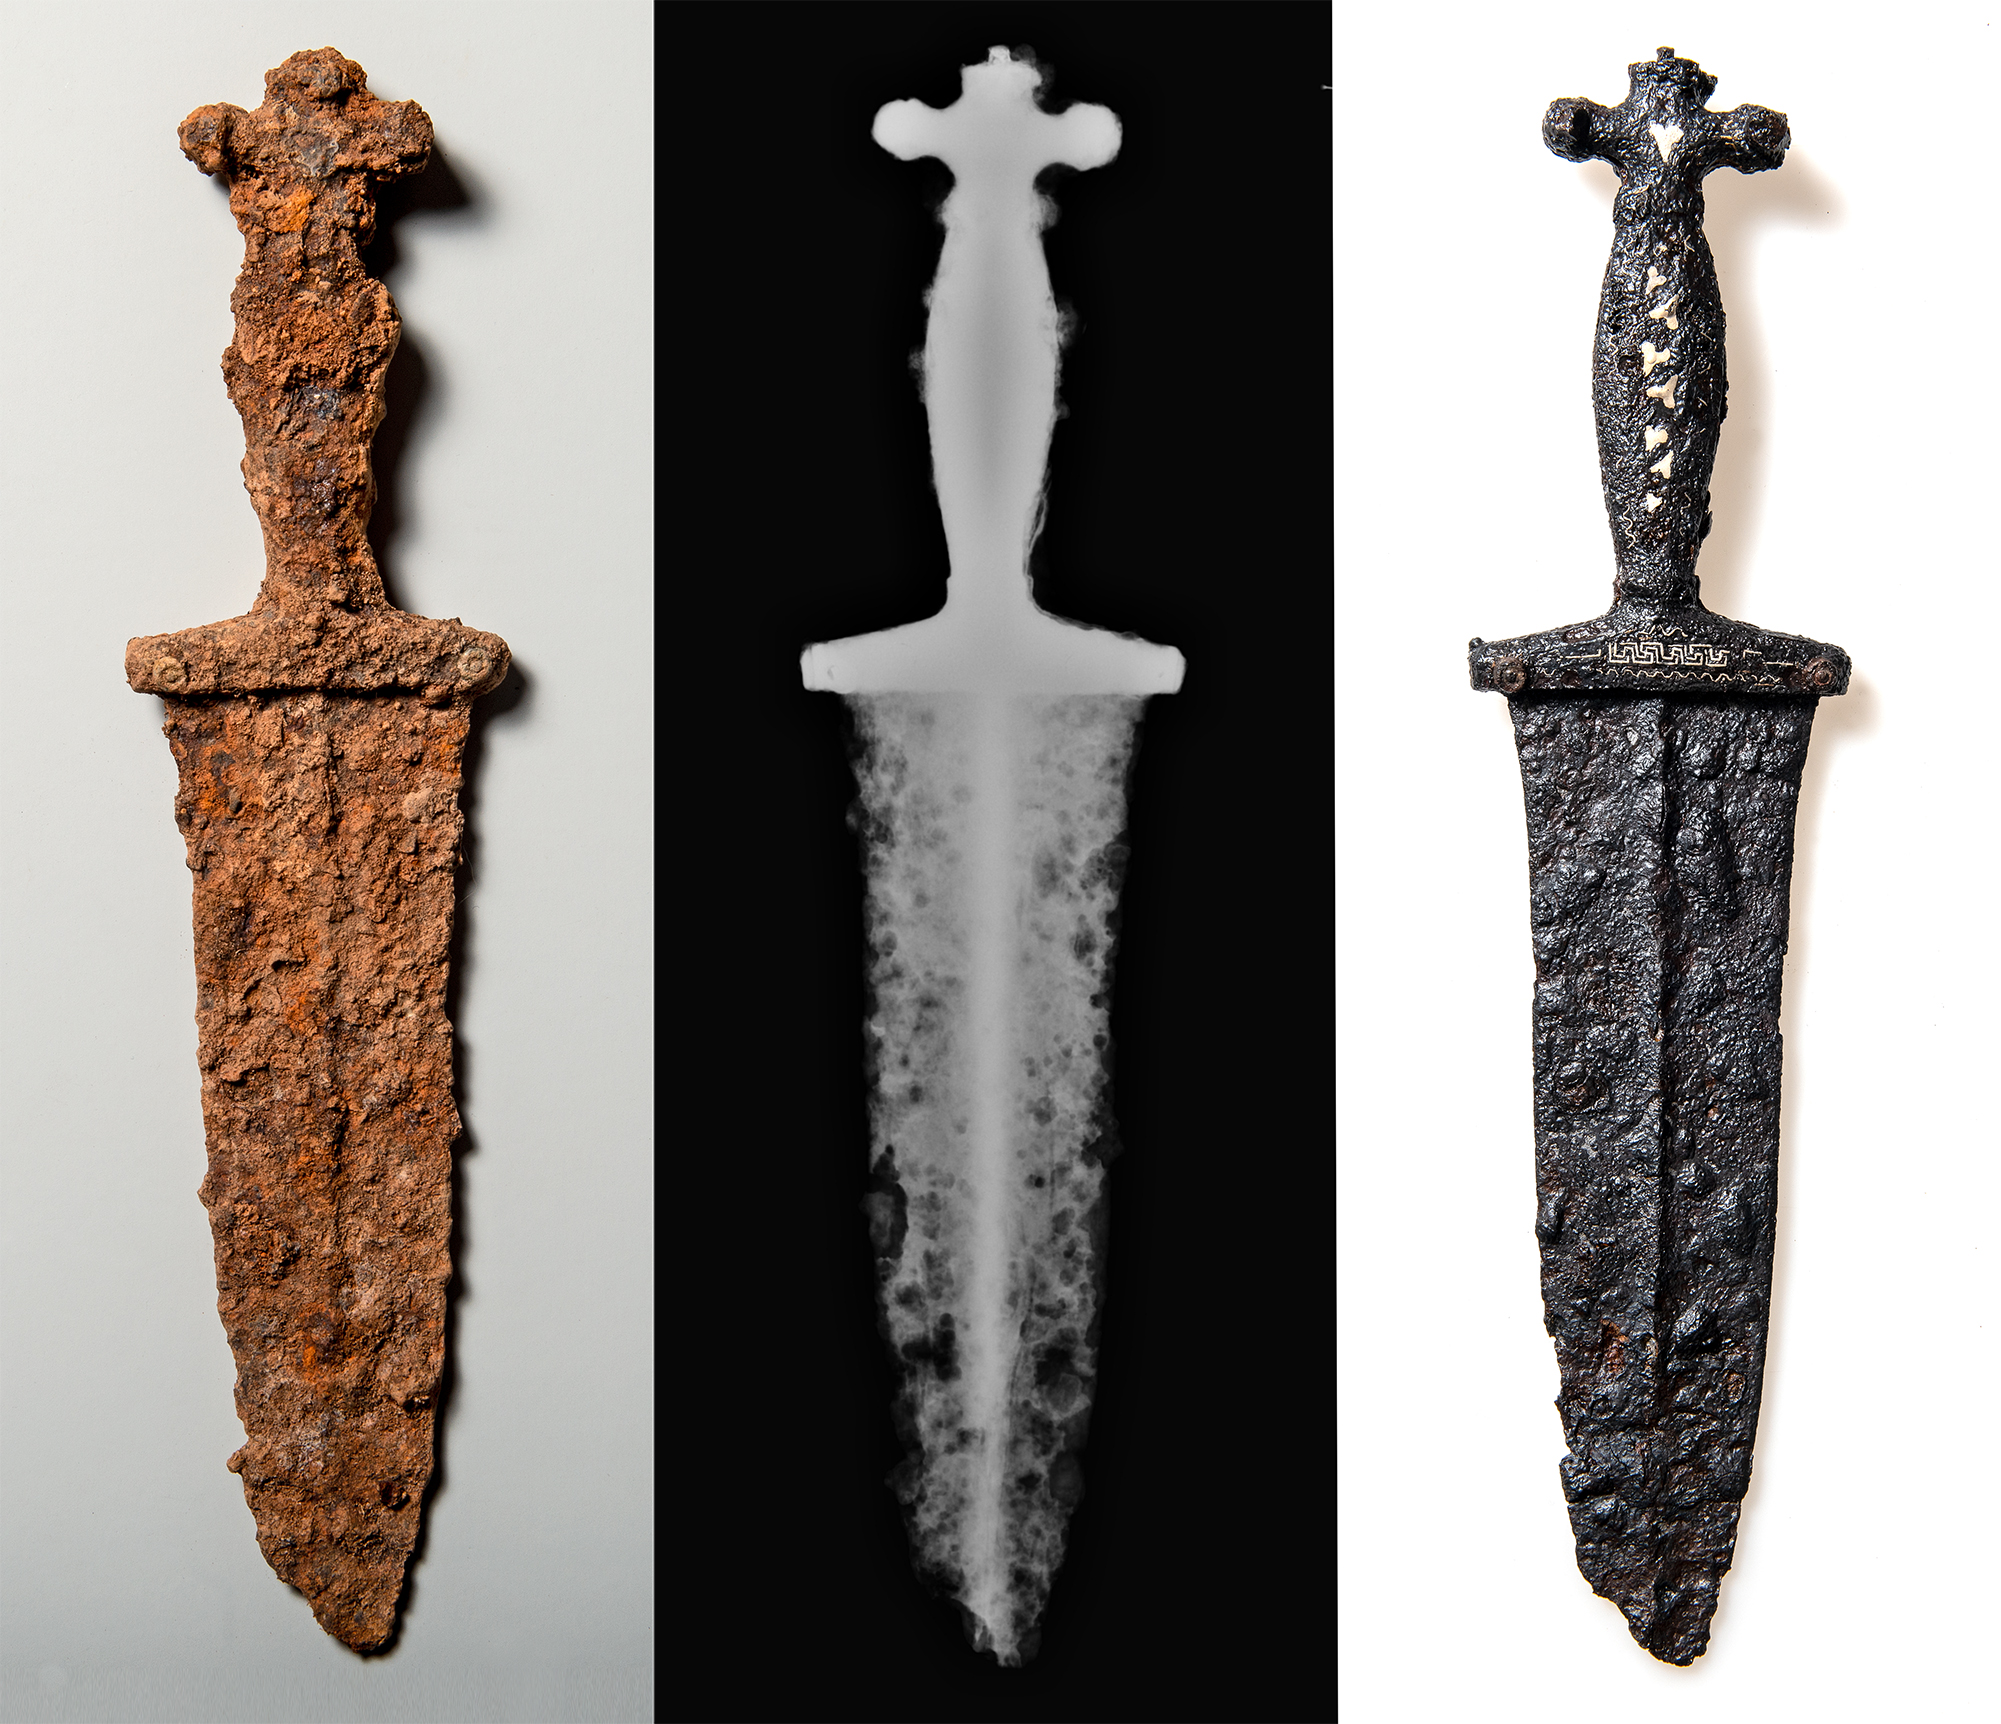 ルーカス・シュミットさんがグラウビュンデン州のクラップ・セス峡谷付近で発見した2千年前のローマ時代の短剣。